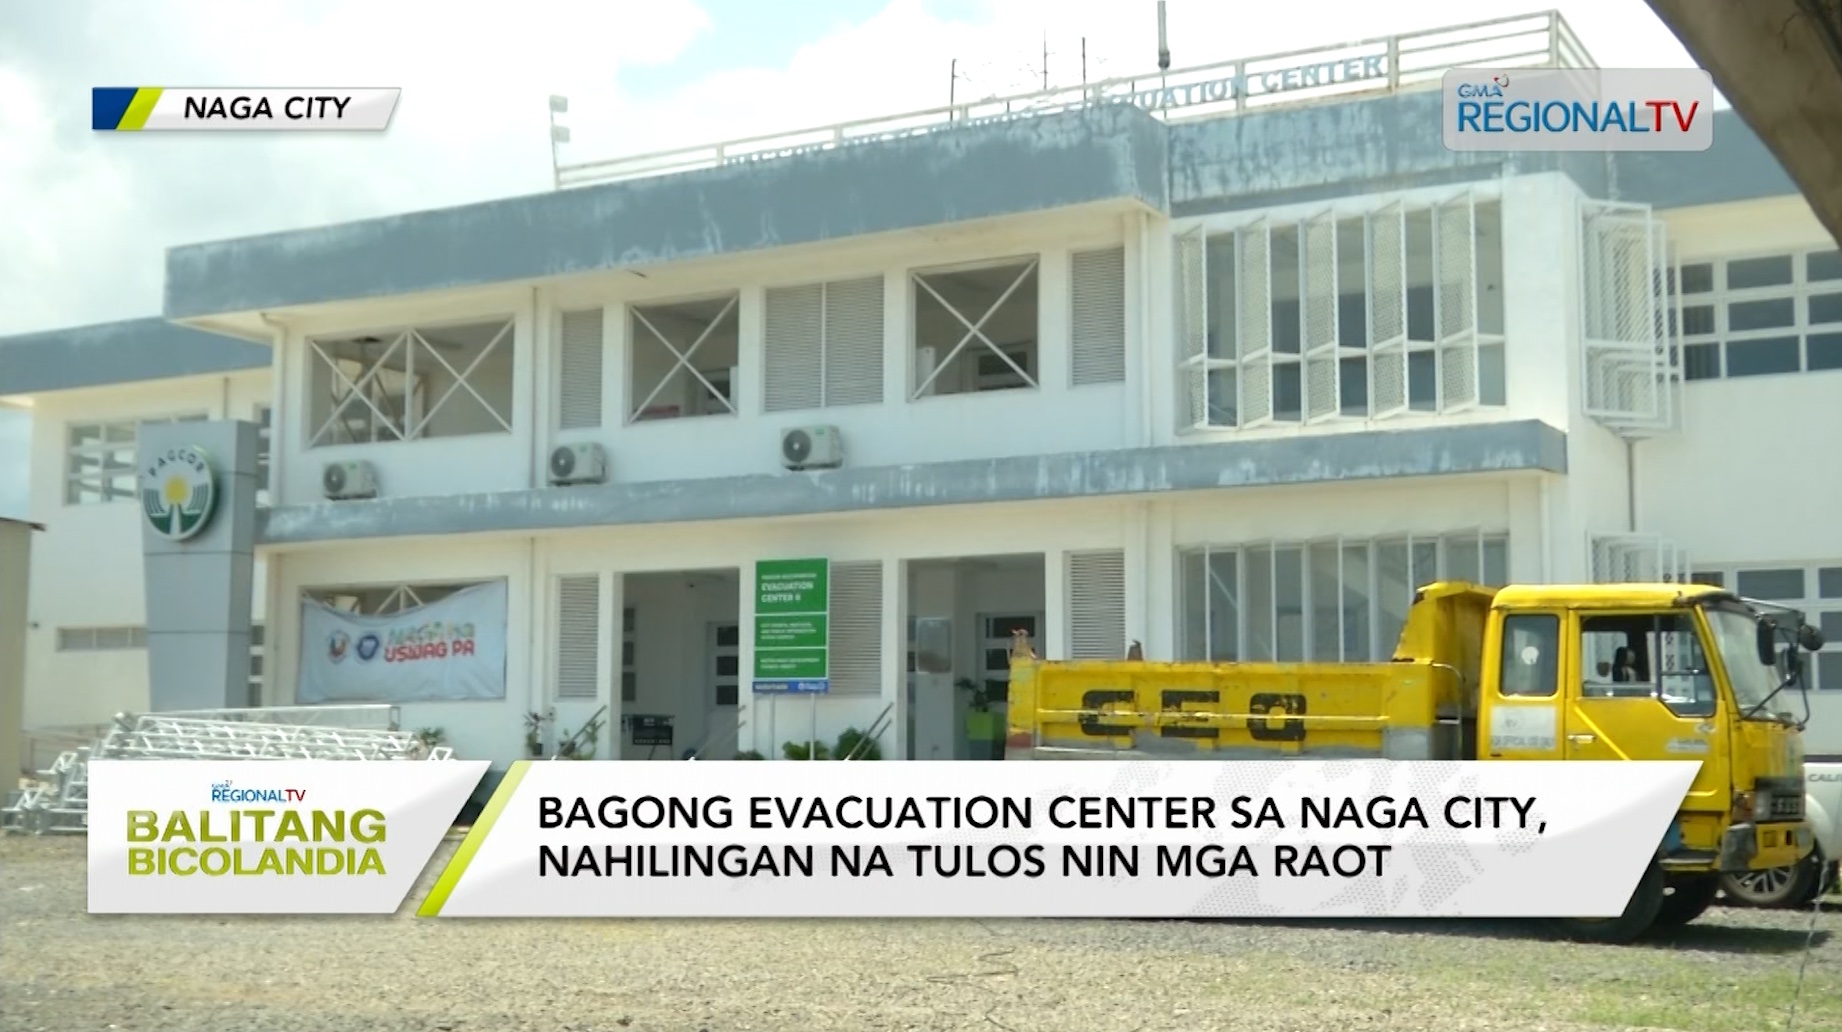 Bagong evacuation center sa Naga City, nahilingan na tulos nin mga raot